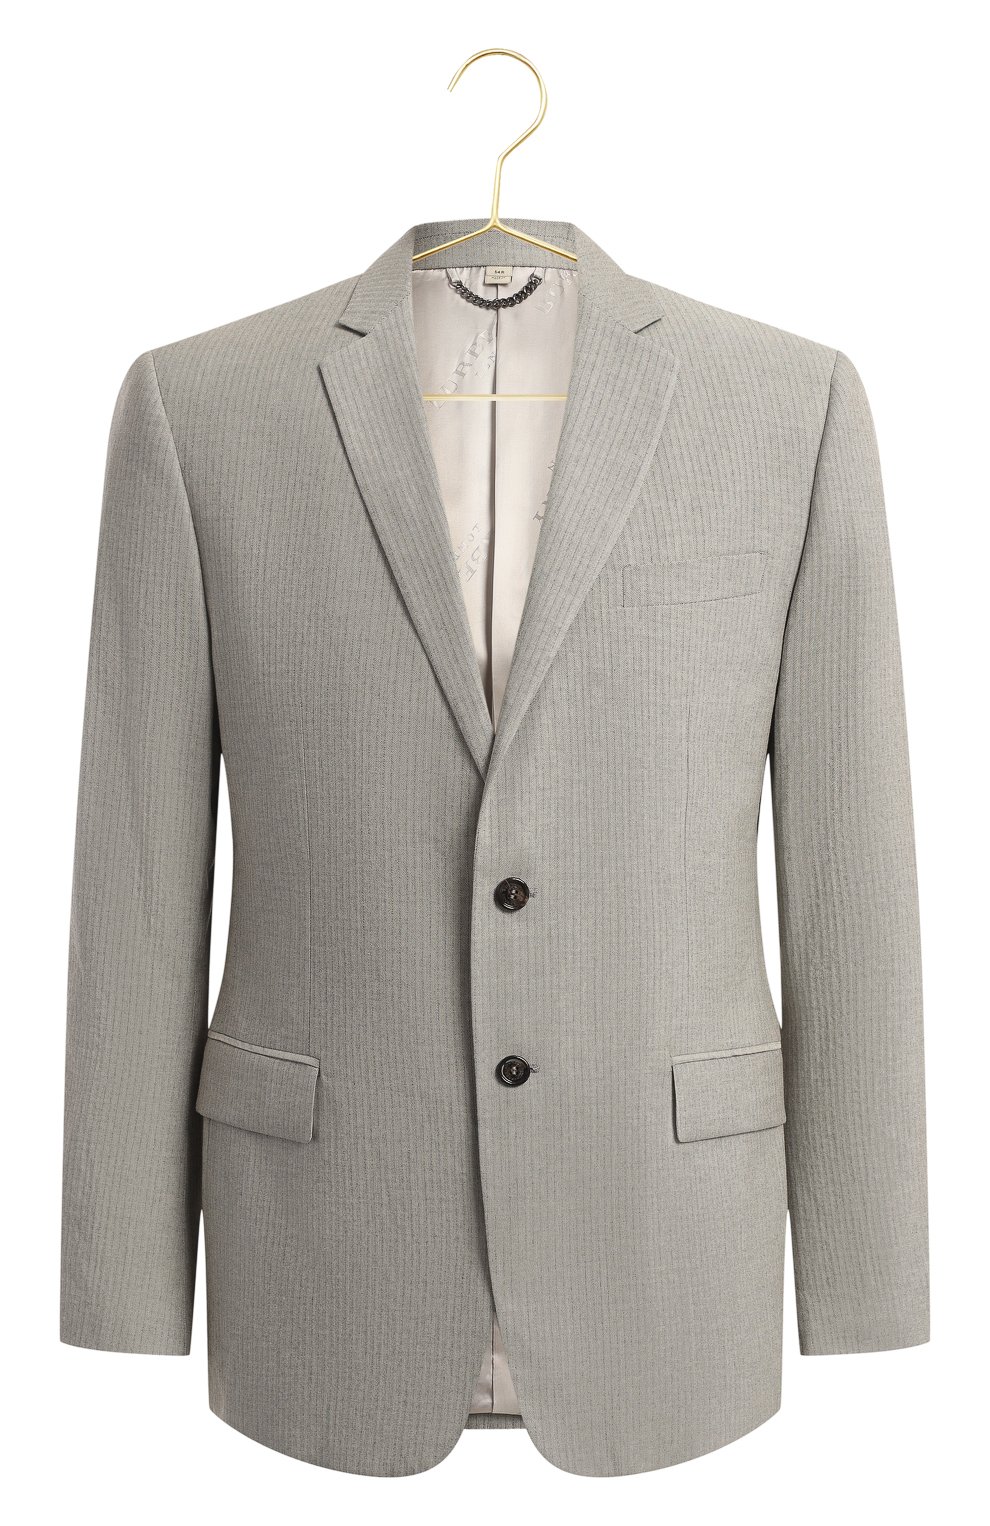 Пиджак из шерсти и хлопка | Burberry | Серый - 1